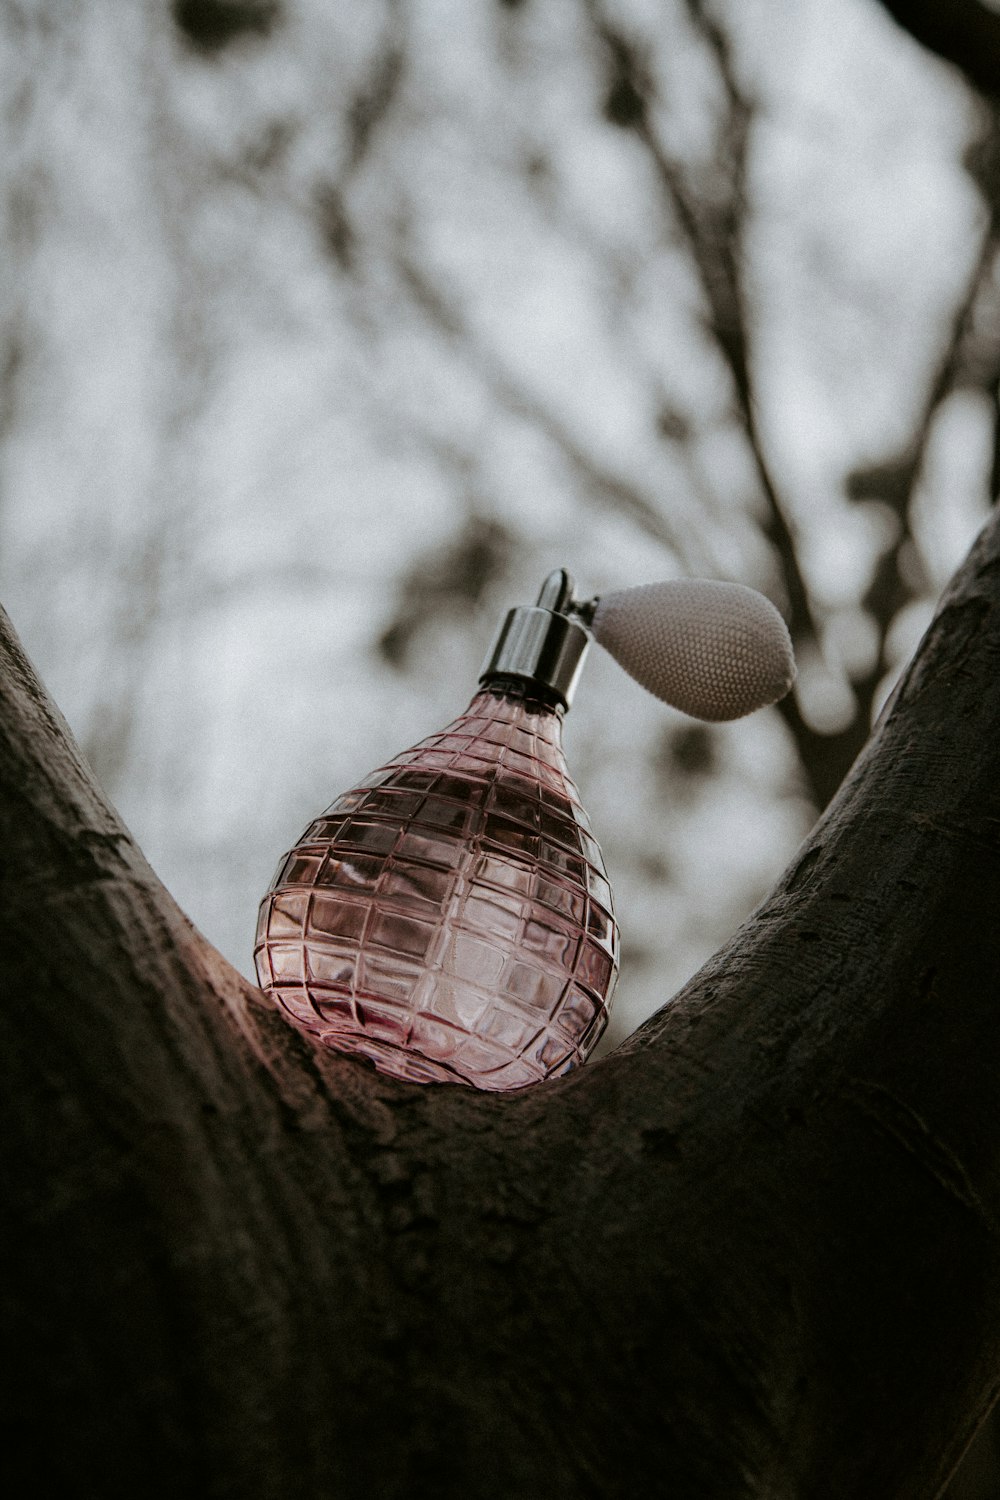 Frasco de perfume rosa y plateado en rama de árbol marrón